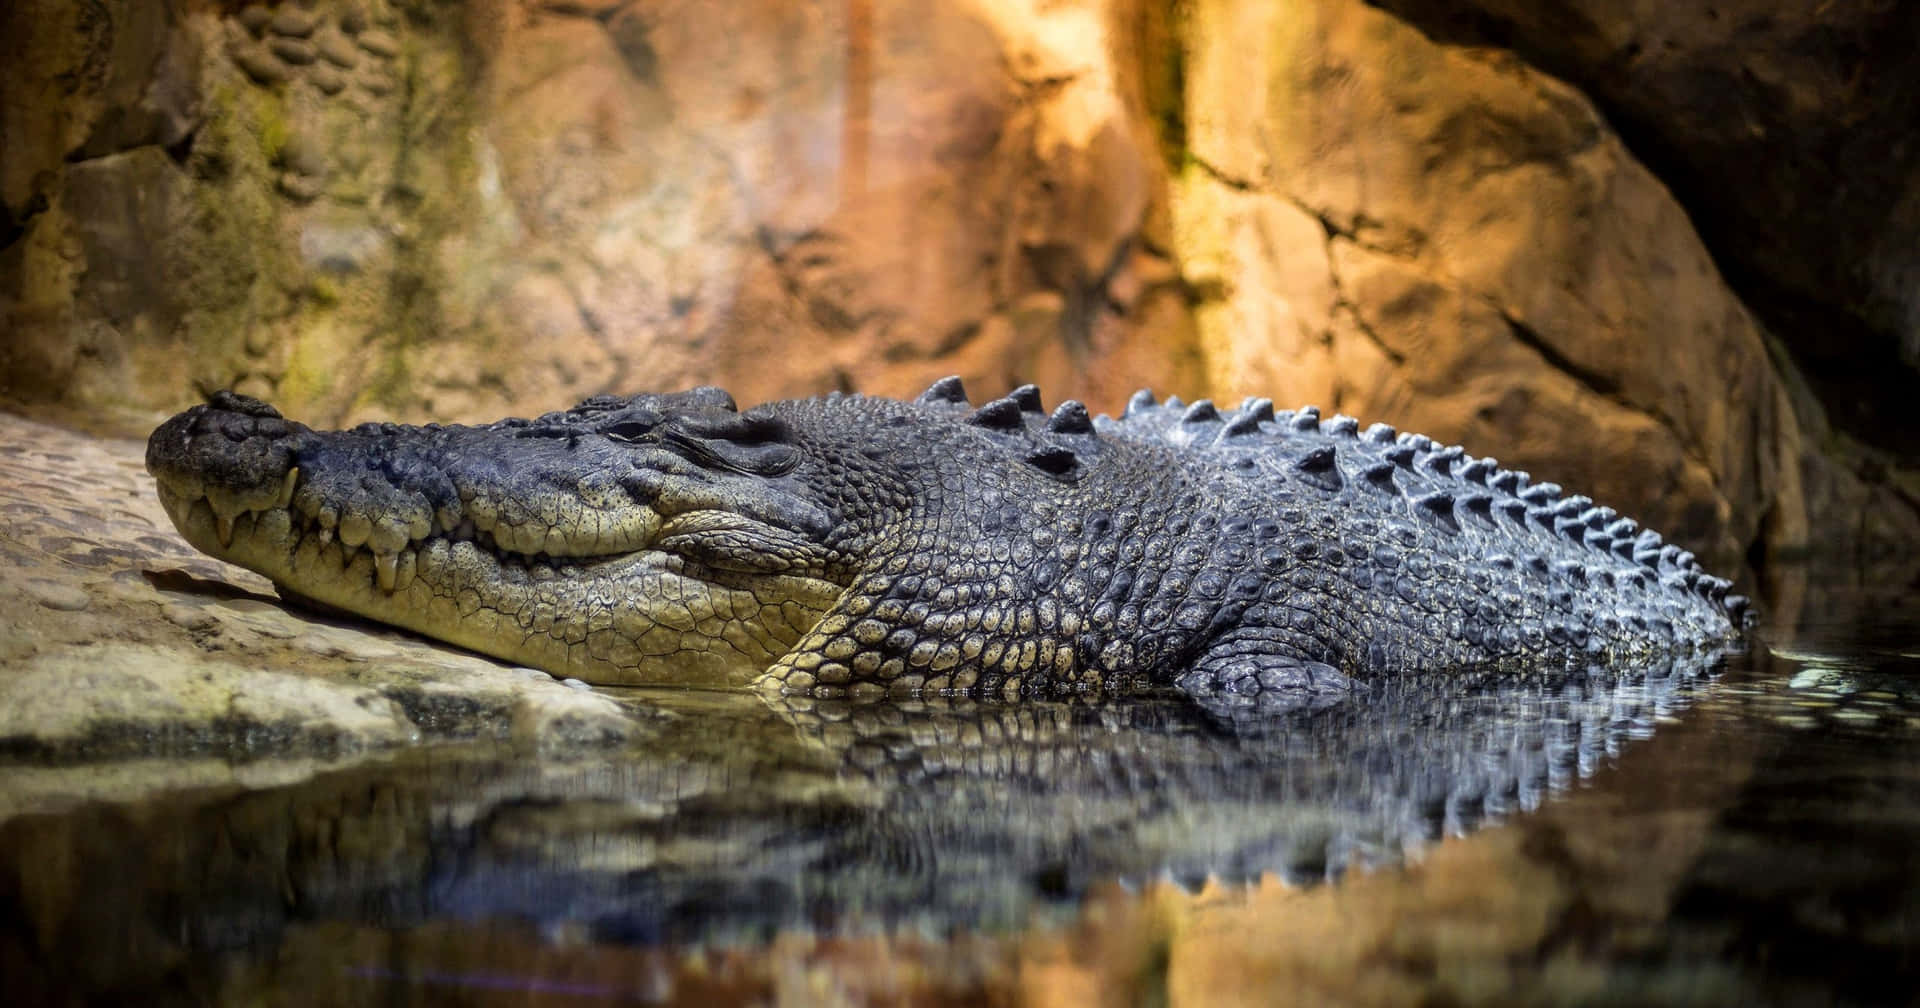 Einalligator Schwimmt In Seinem Natürlichen Lebensraum.